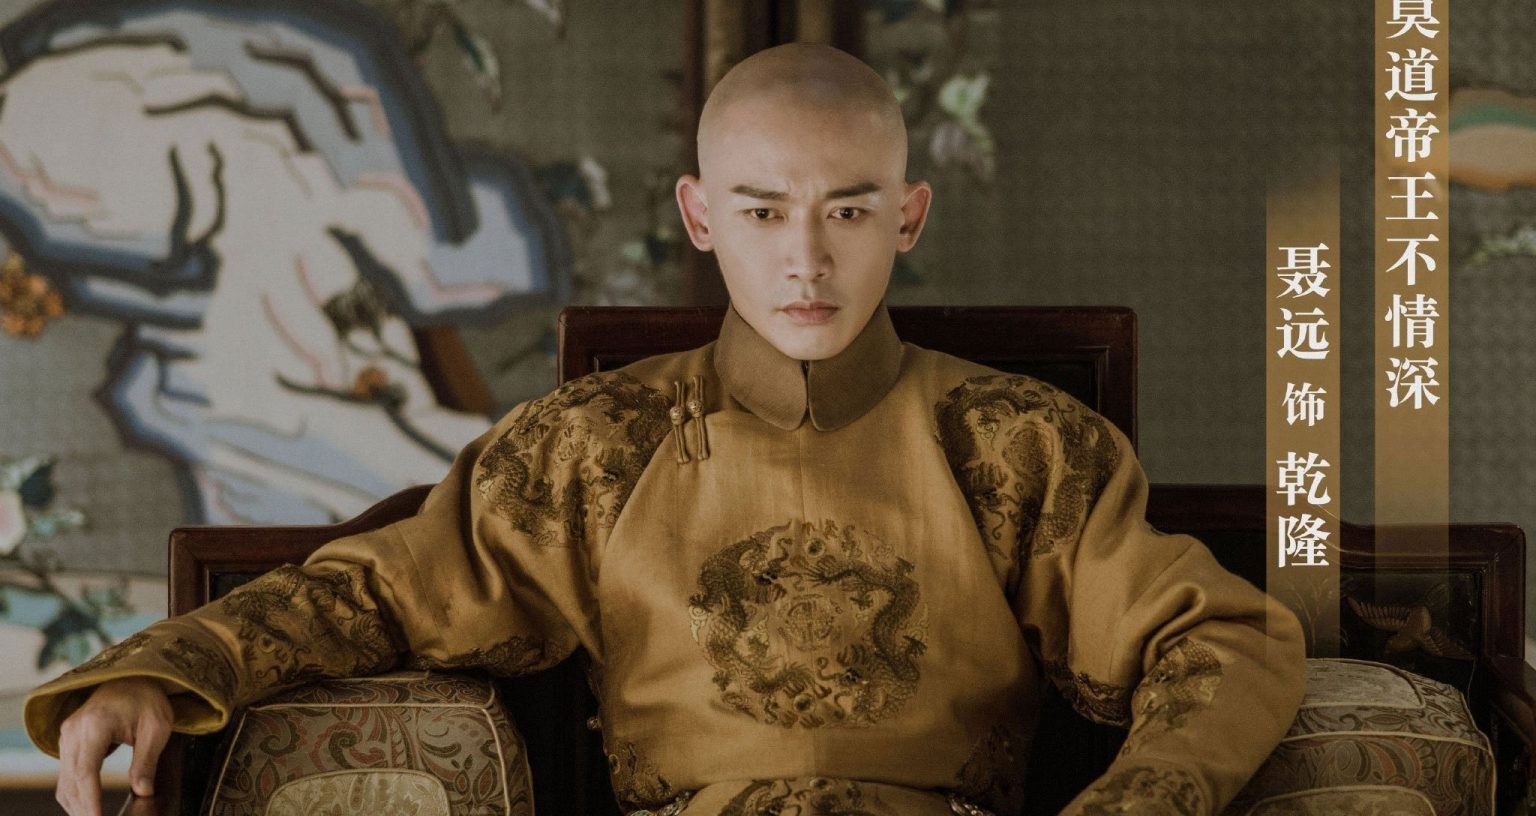 
Khang Hy lên ngôi năm 8 tuổi và làm hoàng đế suốt 61 năm; trong khi đó Càn Long cũng sống đến 87 tuổi, trị vì 60 năm
